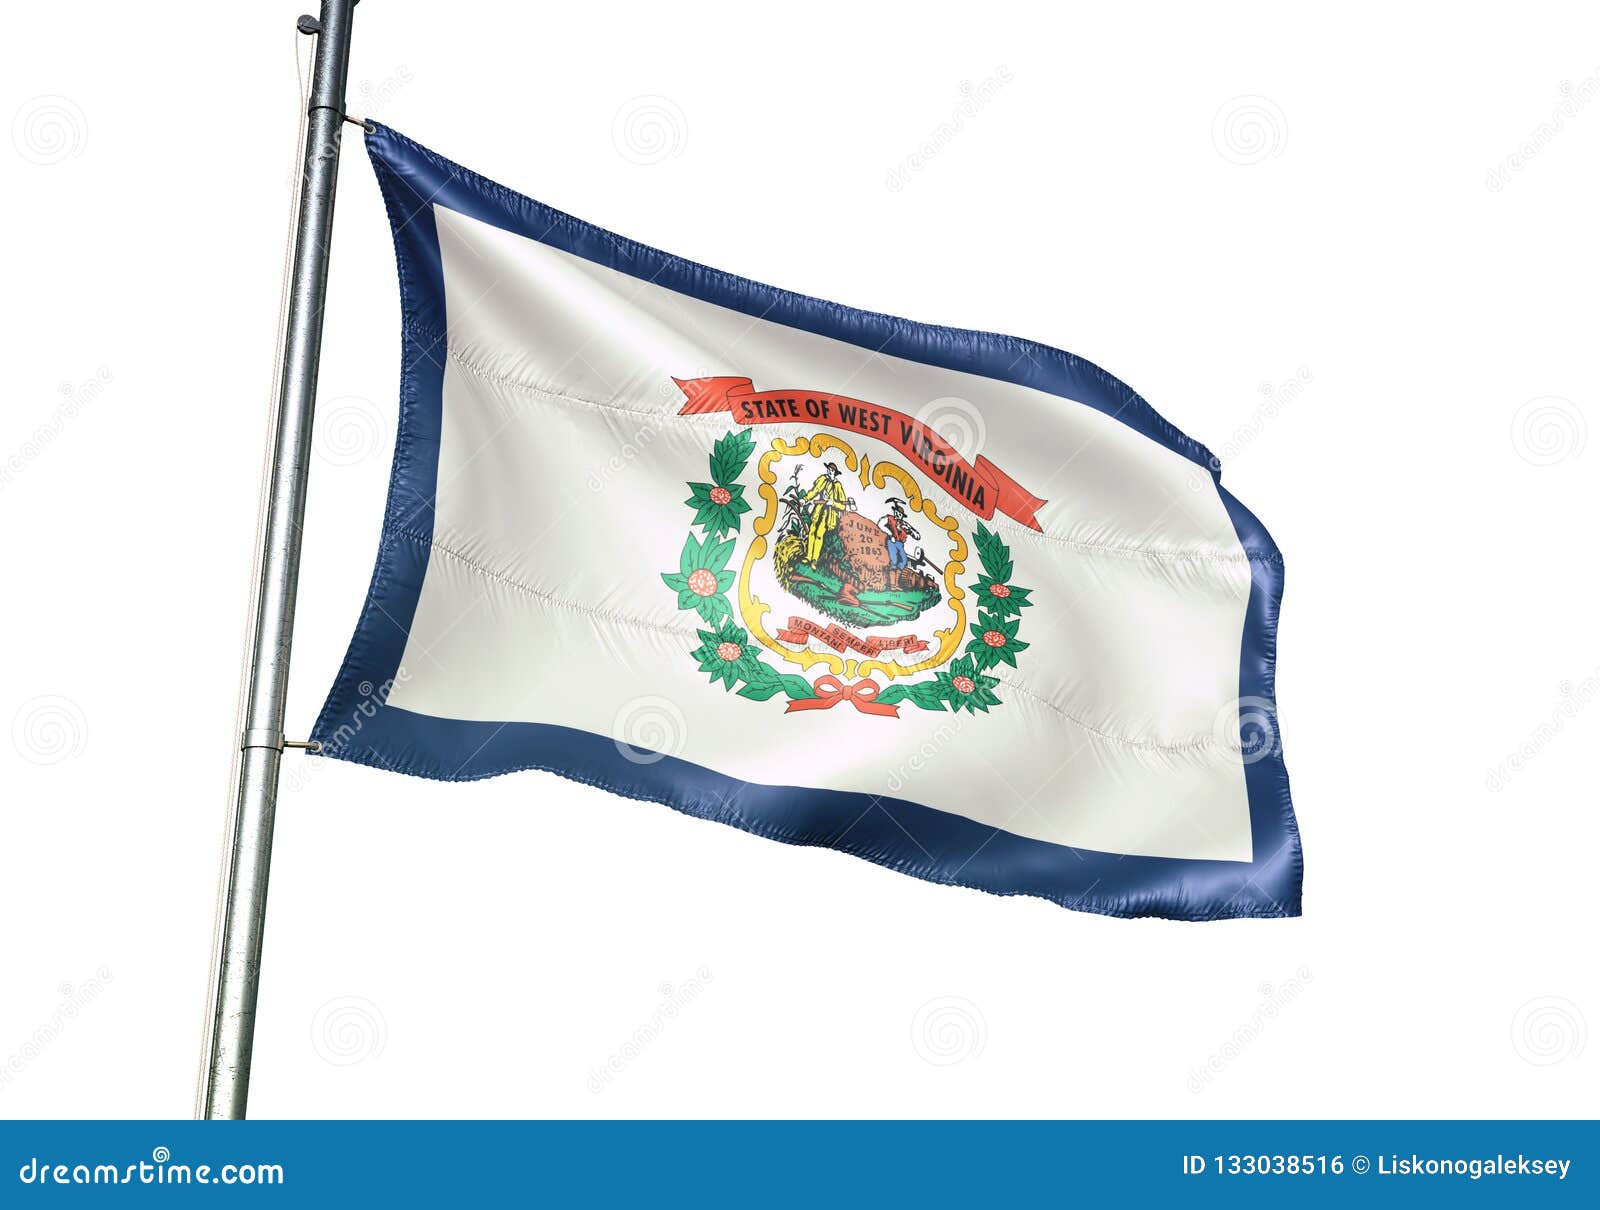 Estado De Virginia Occidental De Agitar De La Bandera De Estados Unidos Aislado En El Ejemplo